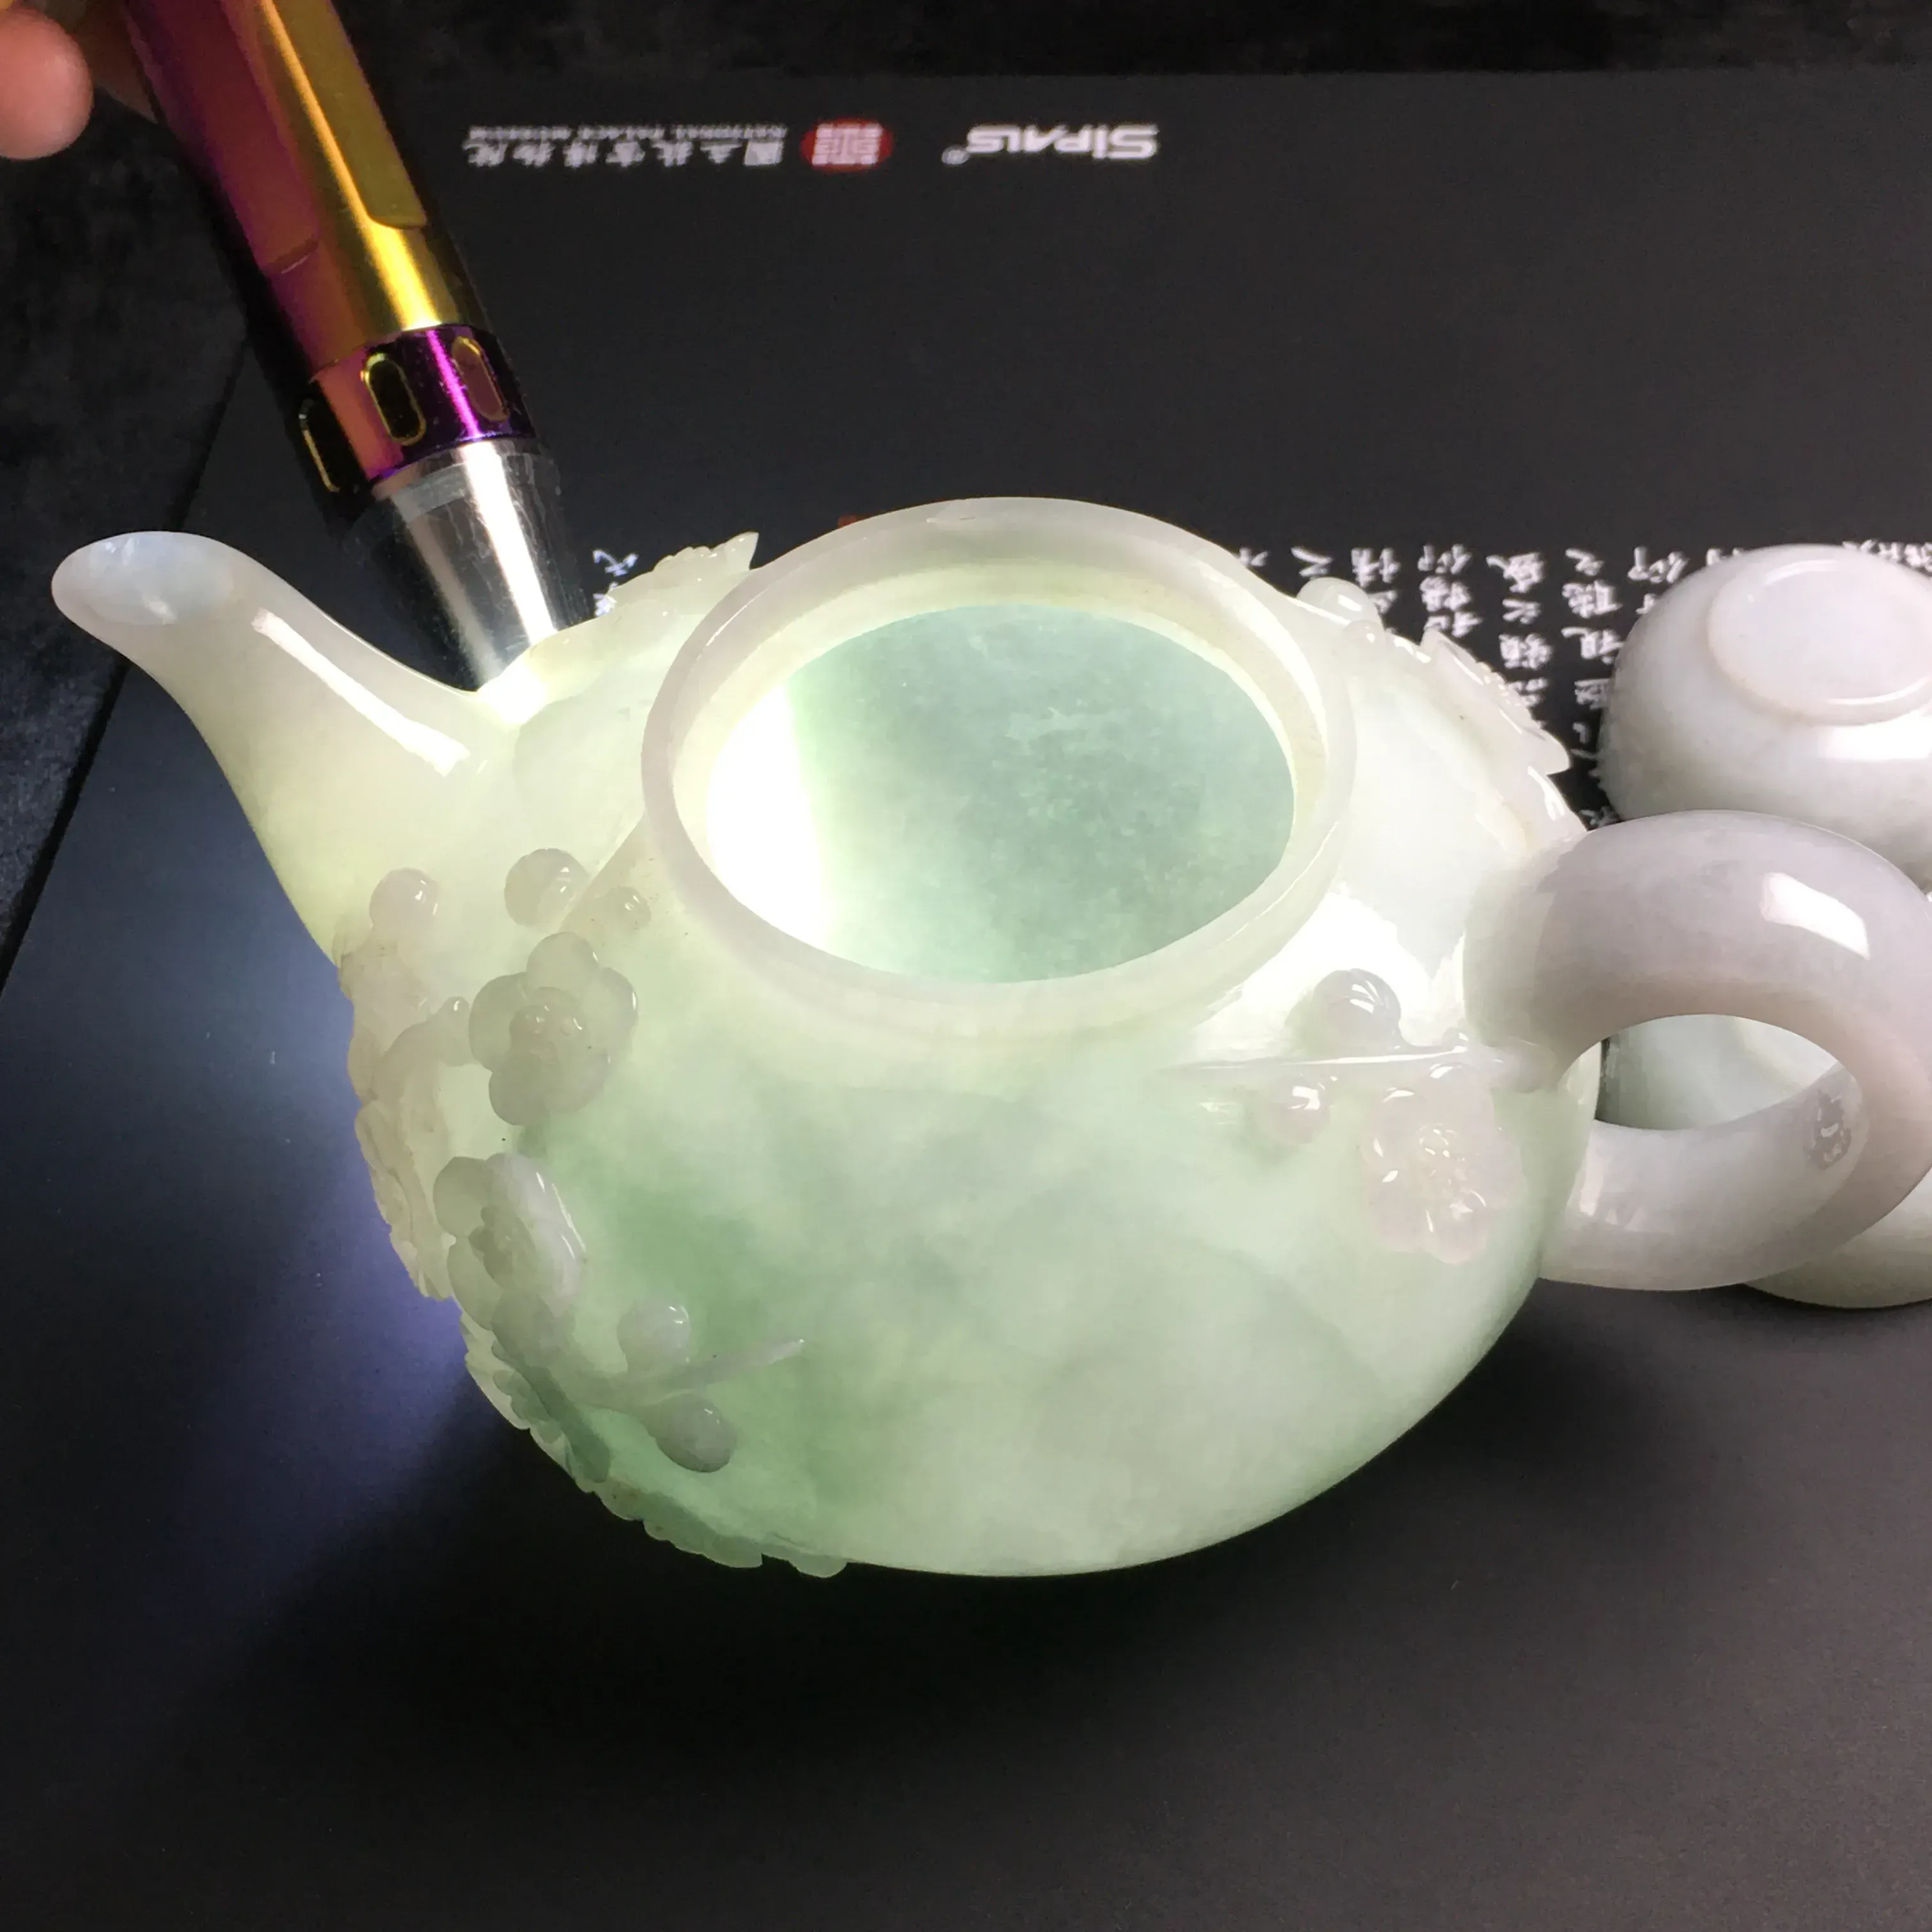 糯化种【梅花】茶具一套 质地细腻 雕工精湛 款式时尚 茶杯尺寸42-21毫米 梅花香自苦寒来